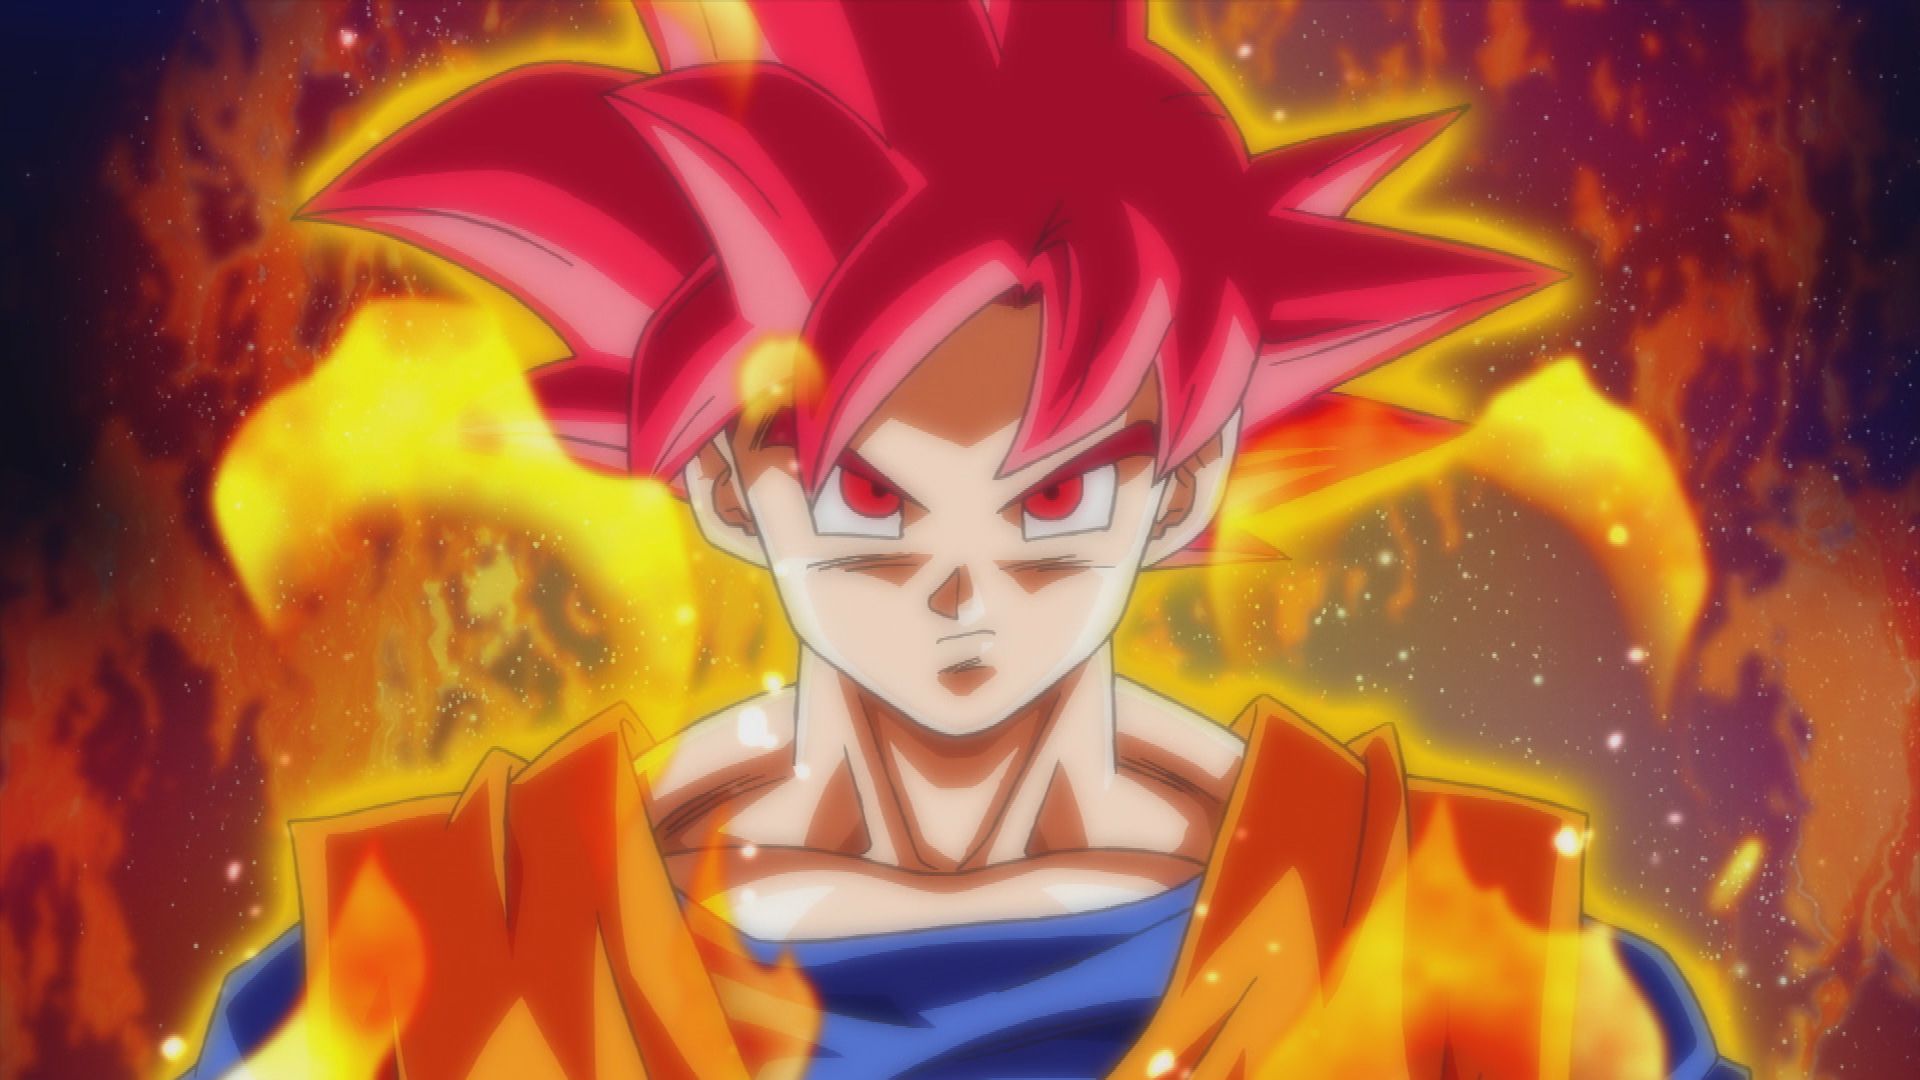 Dragon Ball Z Goku Super Saiyan God Wallpaper Anime